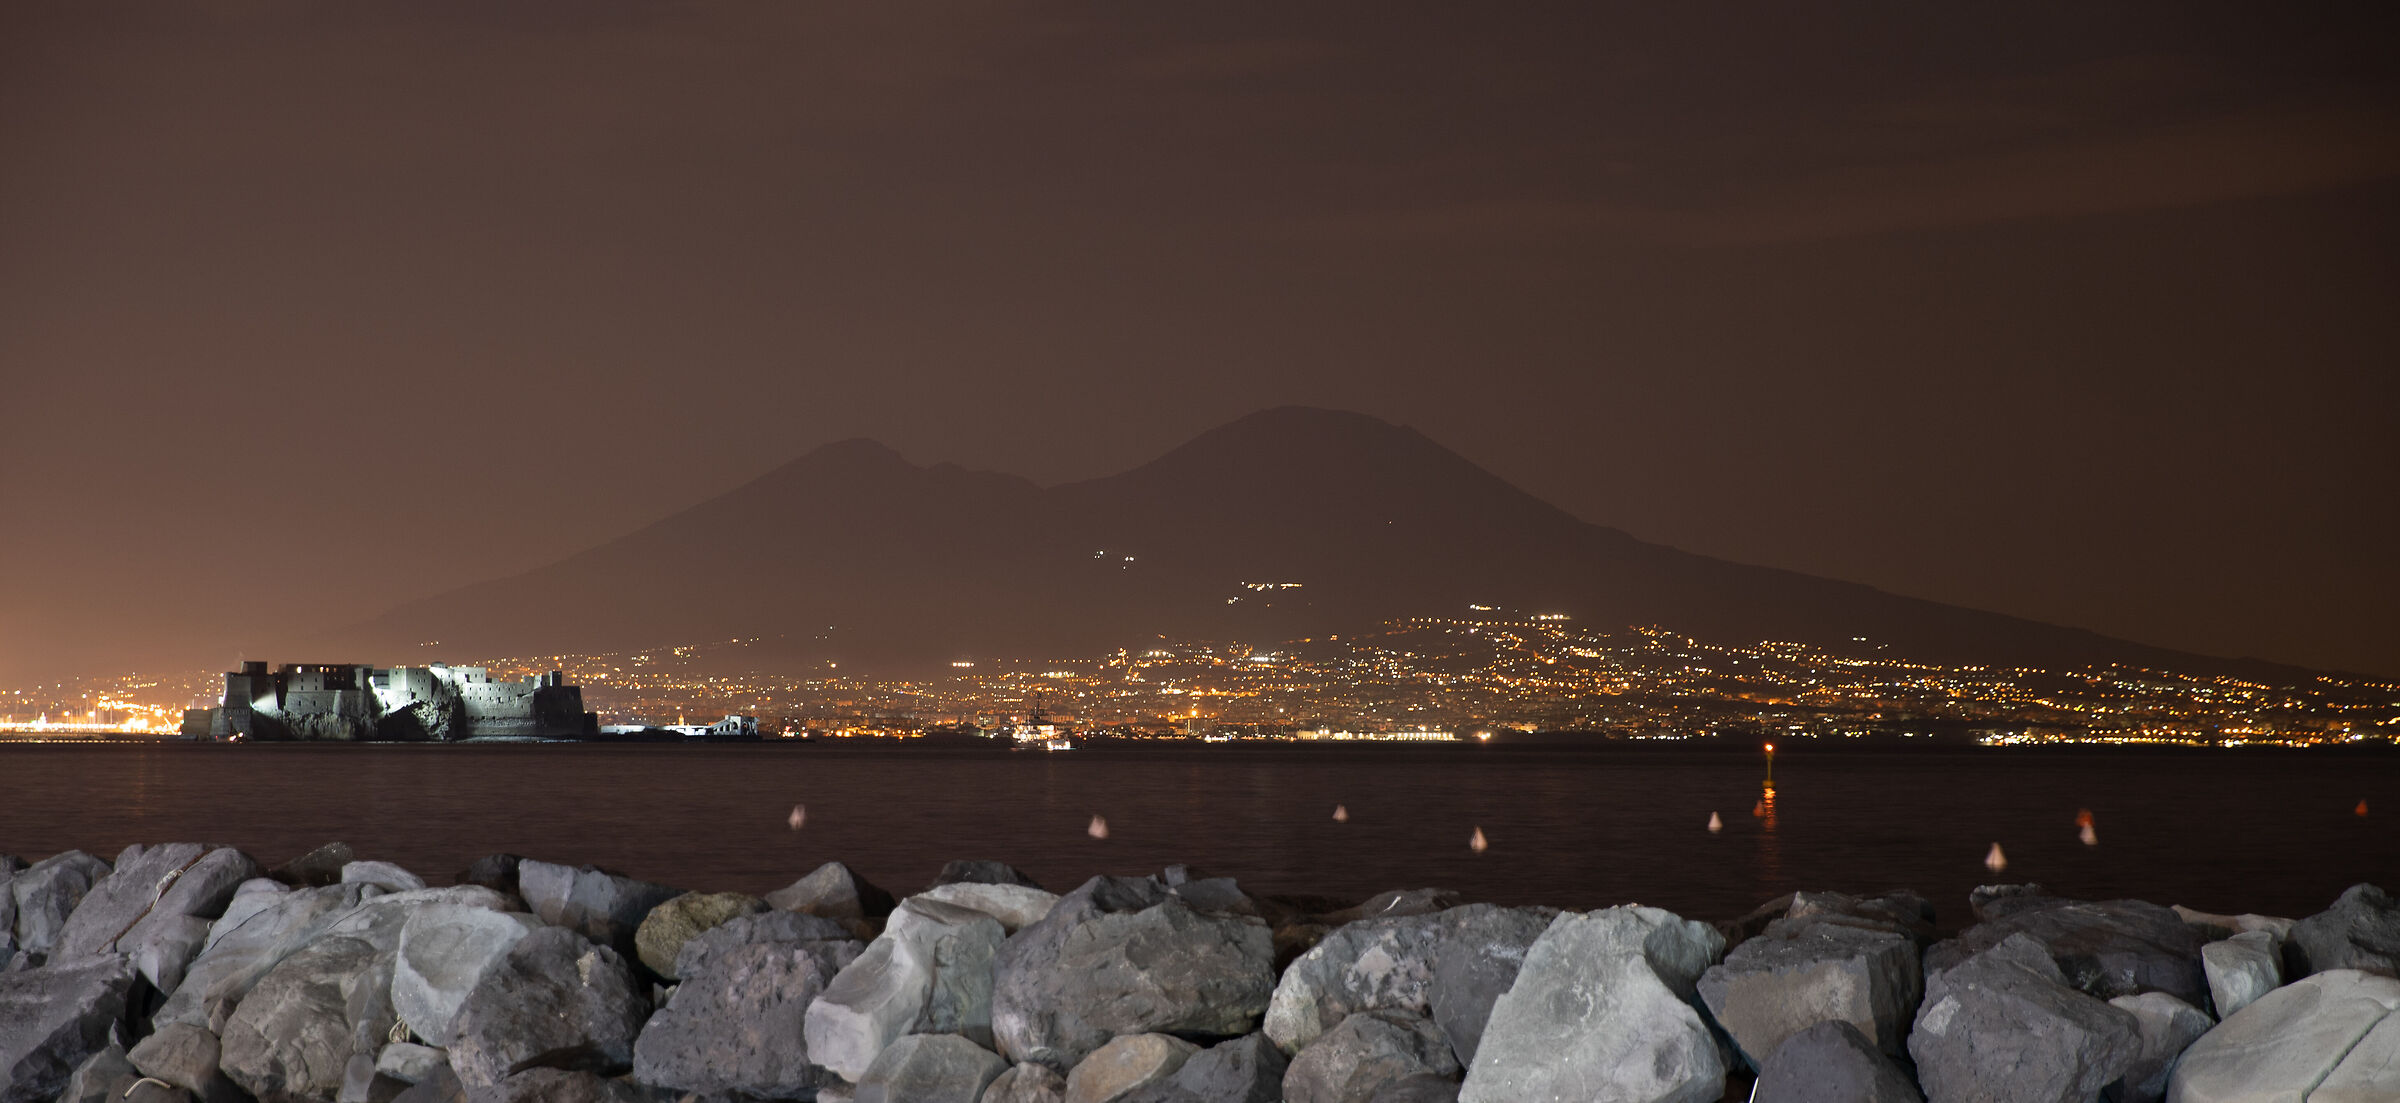 Vesuvius view at night...